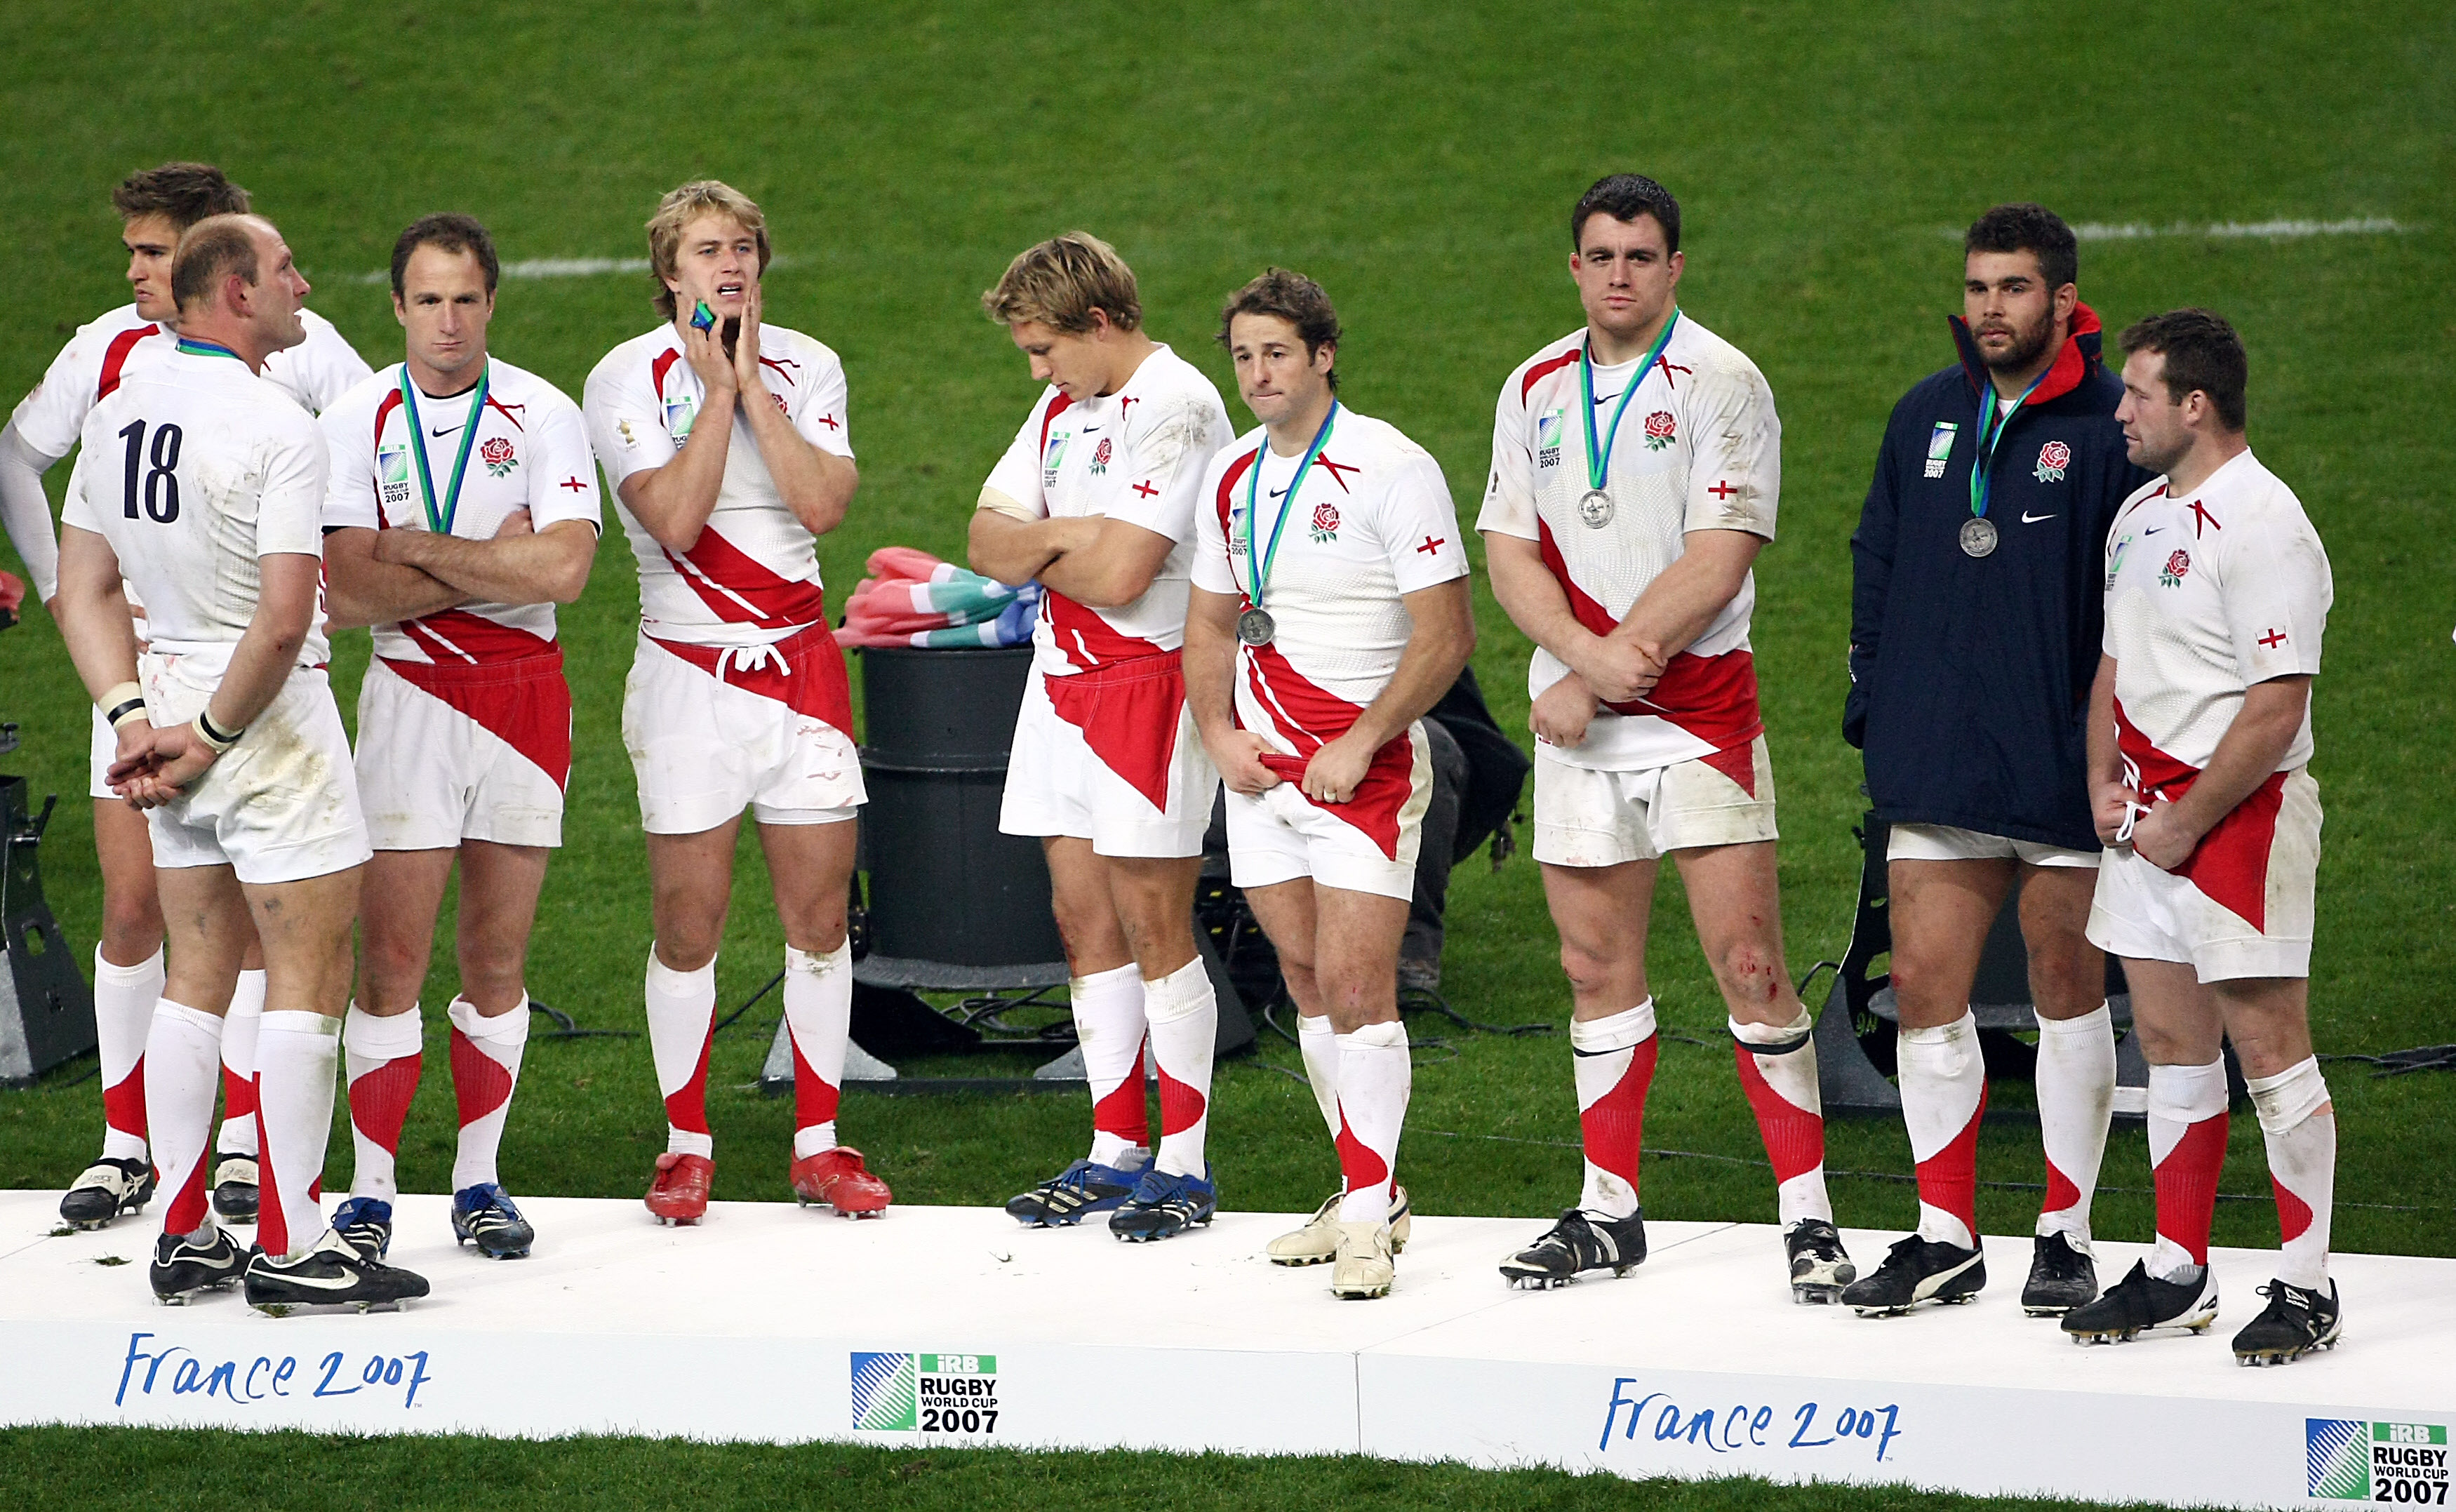 Sheridan (Dritter von rechts) mit Jonny Wilkinson (Fünfter von rechts) nach der Finalniederlage bei der Weltmeisterschaft 2007